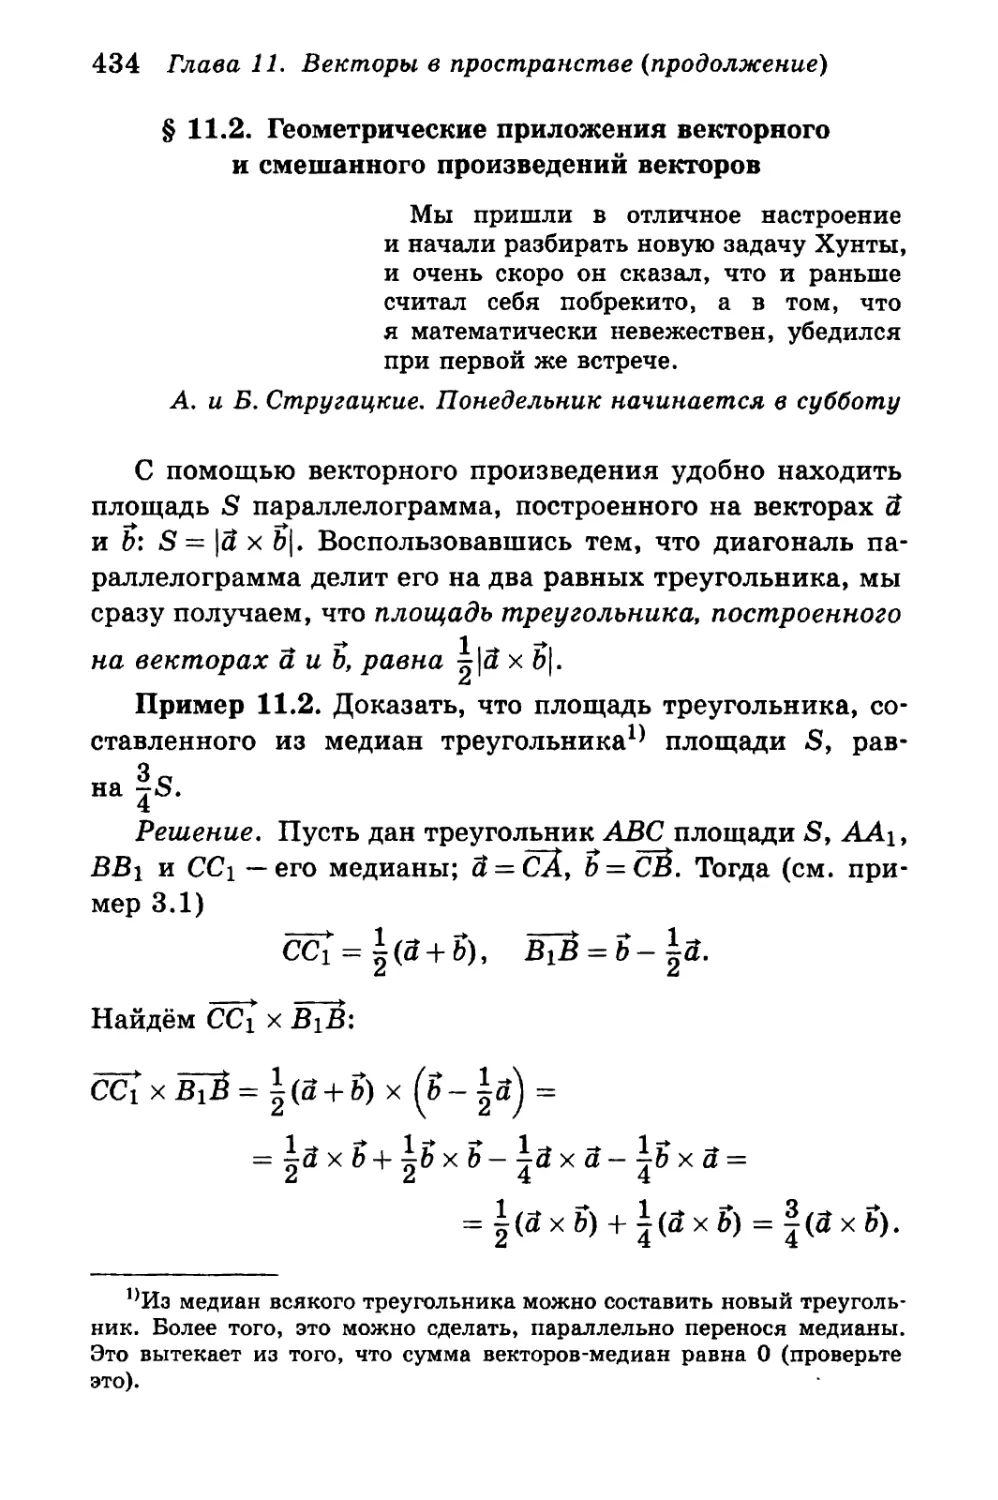 § 11.2. Приложения произведений векторов